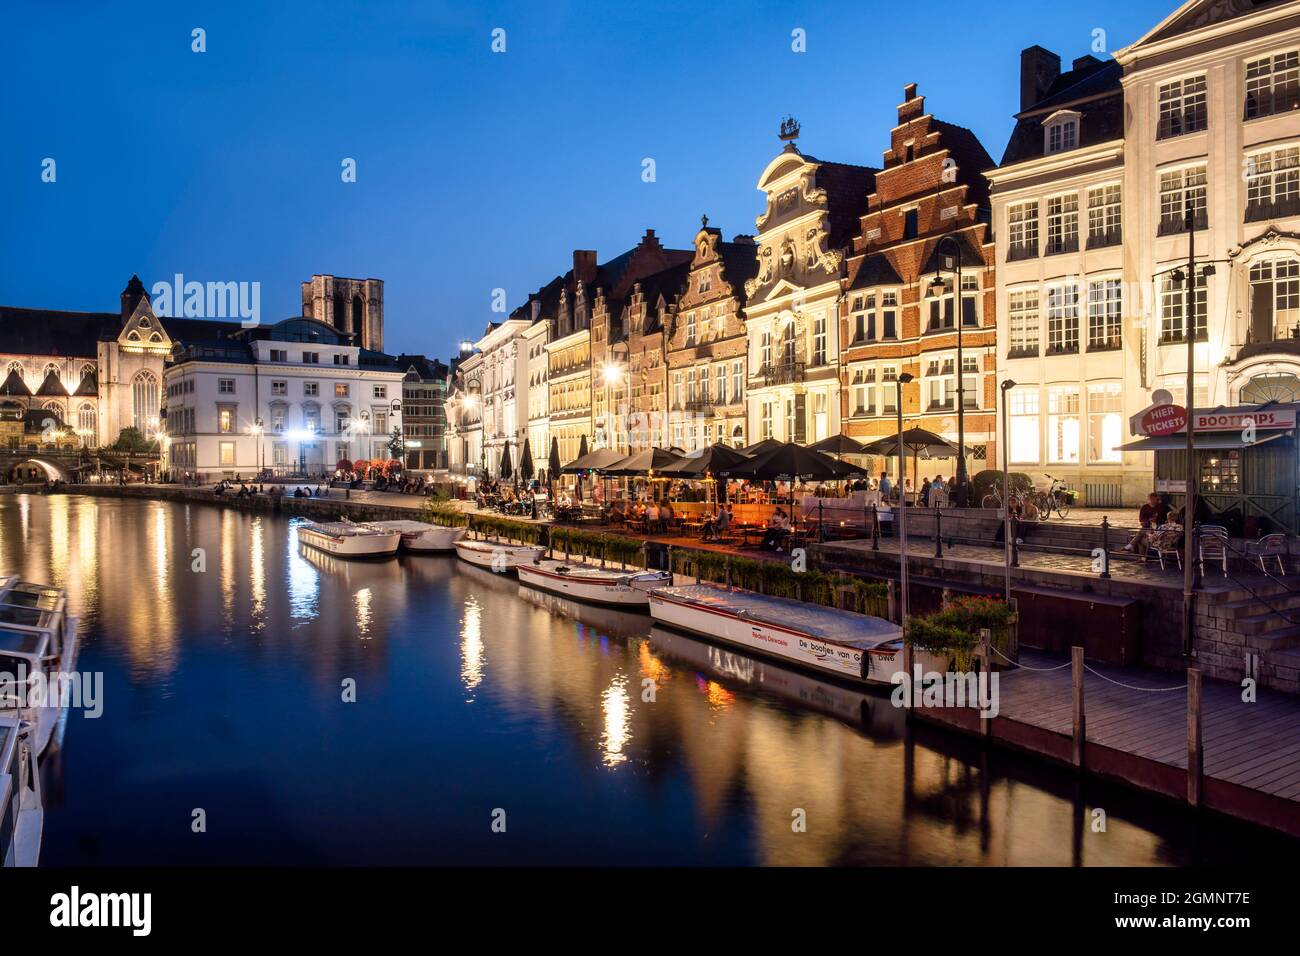 Historisches Zentrum von Gent am Abend, mittelalterliche Häuser, Korenlei Ufer Promenade, Ausflugsboote, Gent, Flandern, Belgio, Europa Foto Stock